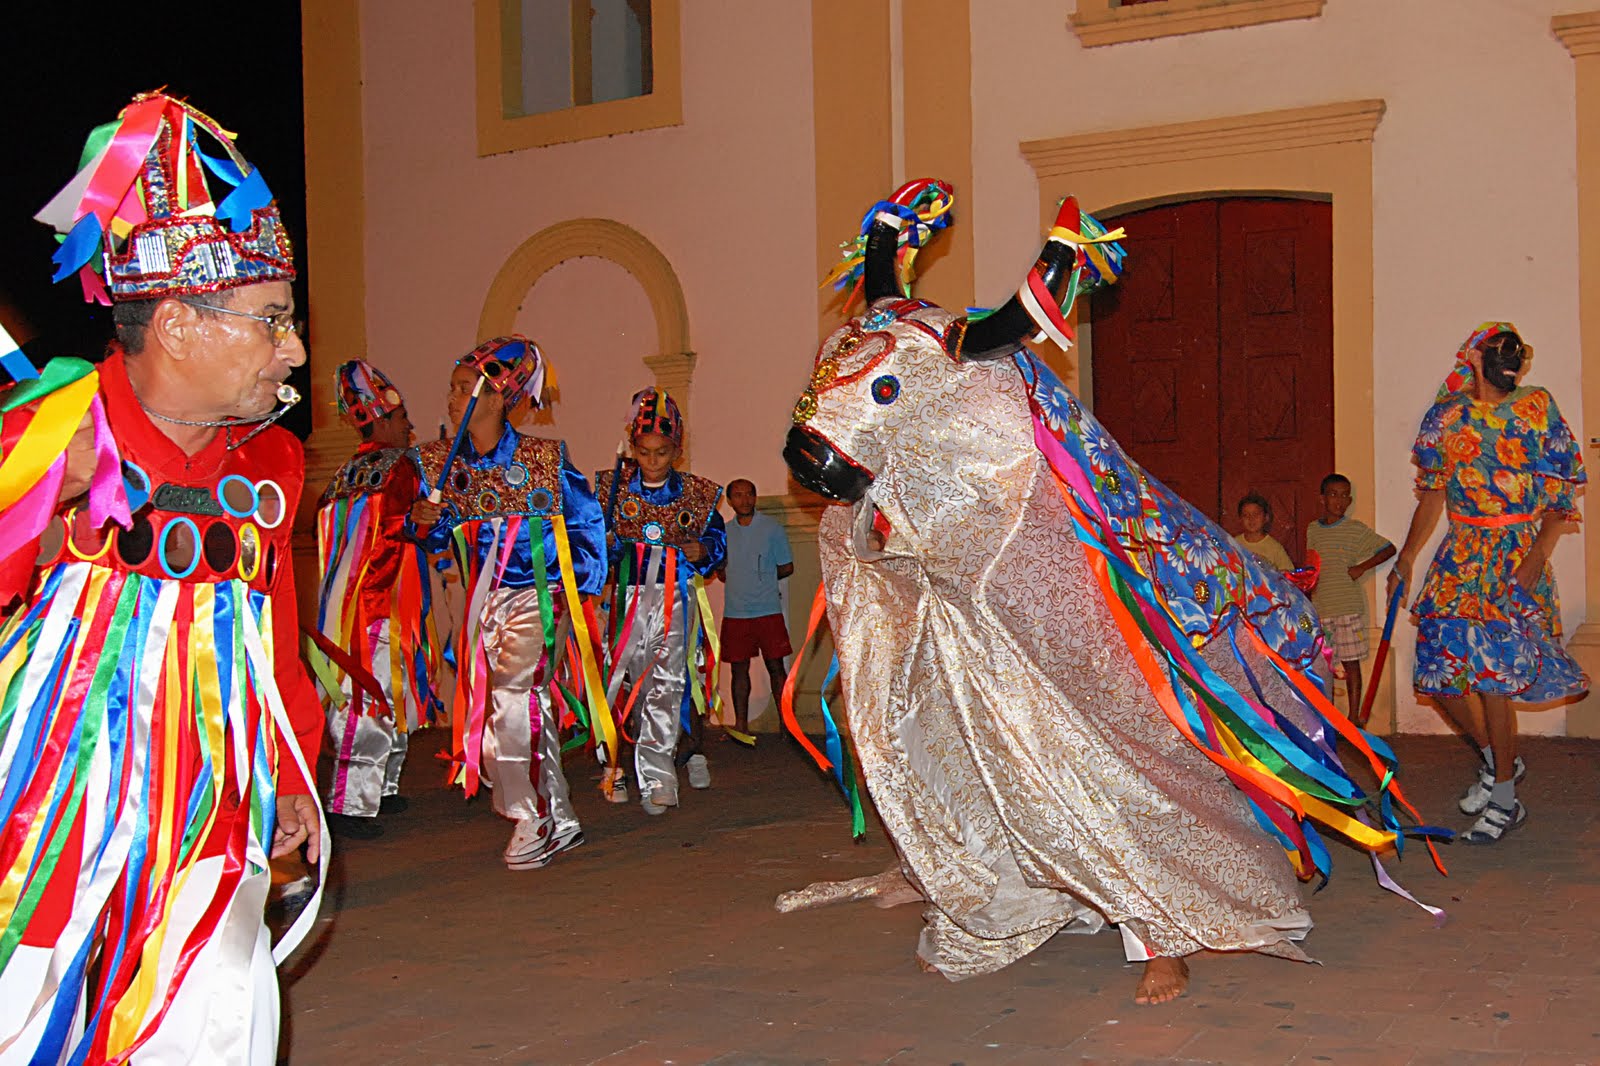 Boi Calemba Pintadinho participa de Festival Folclórico em São Paulo